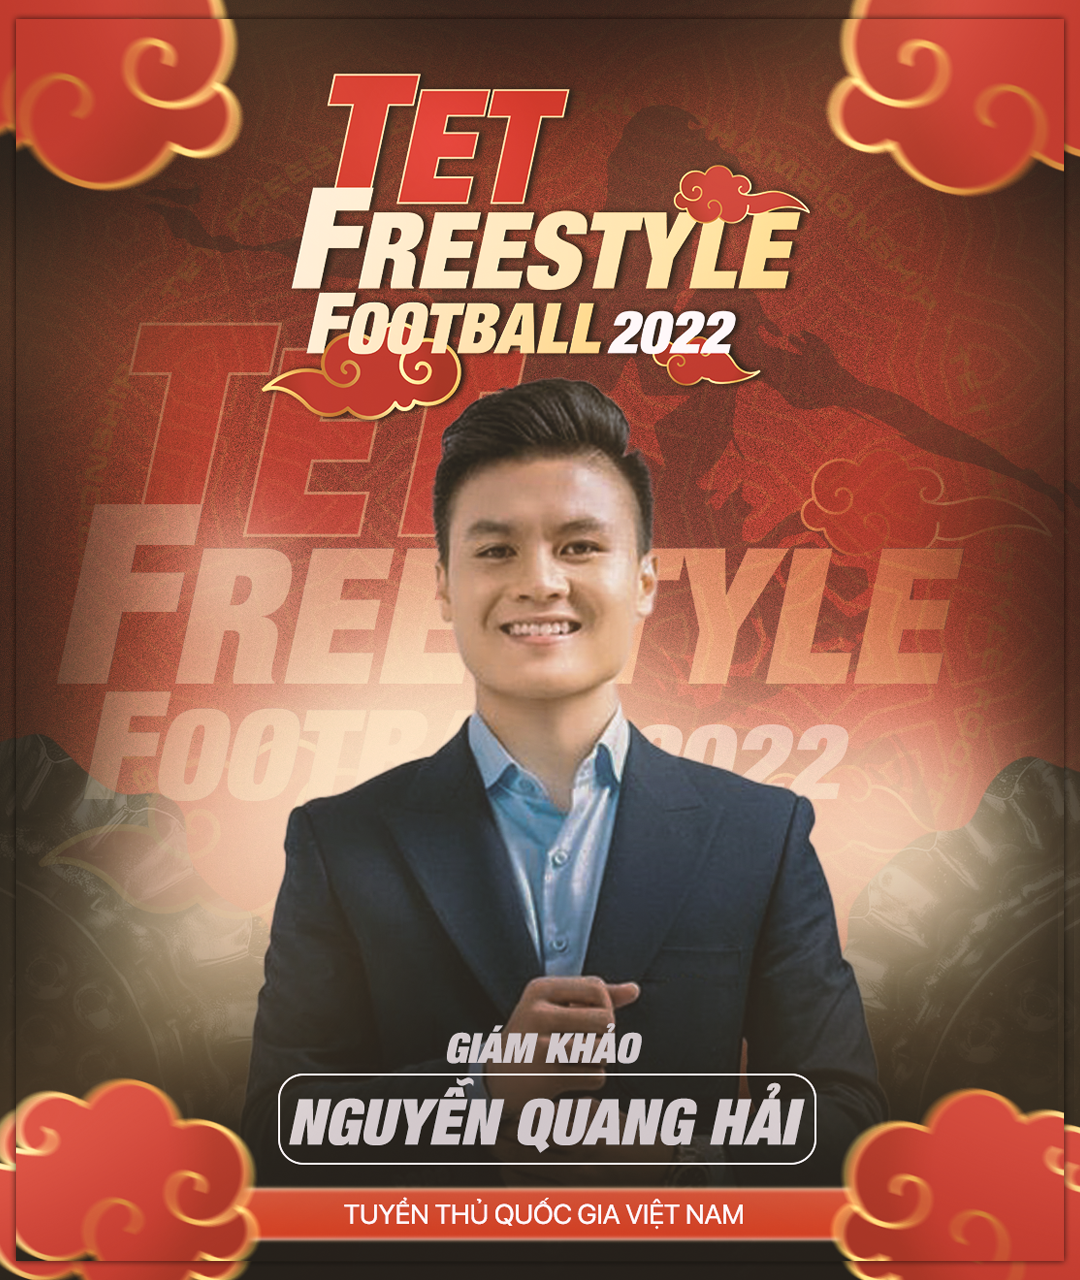 Quang Hải làm giám khảo Tết Freestyle Football 2022  - 2